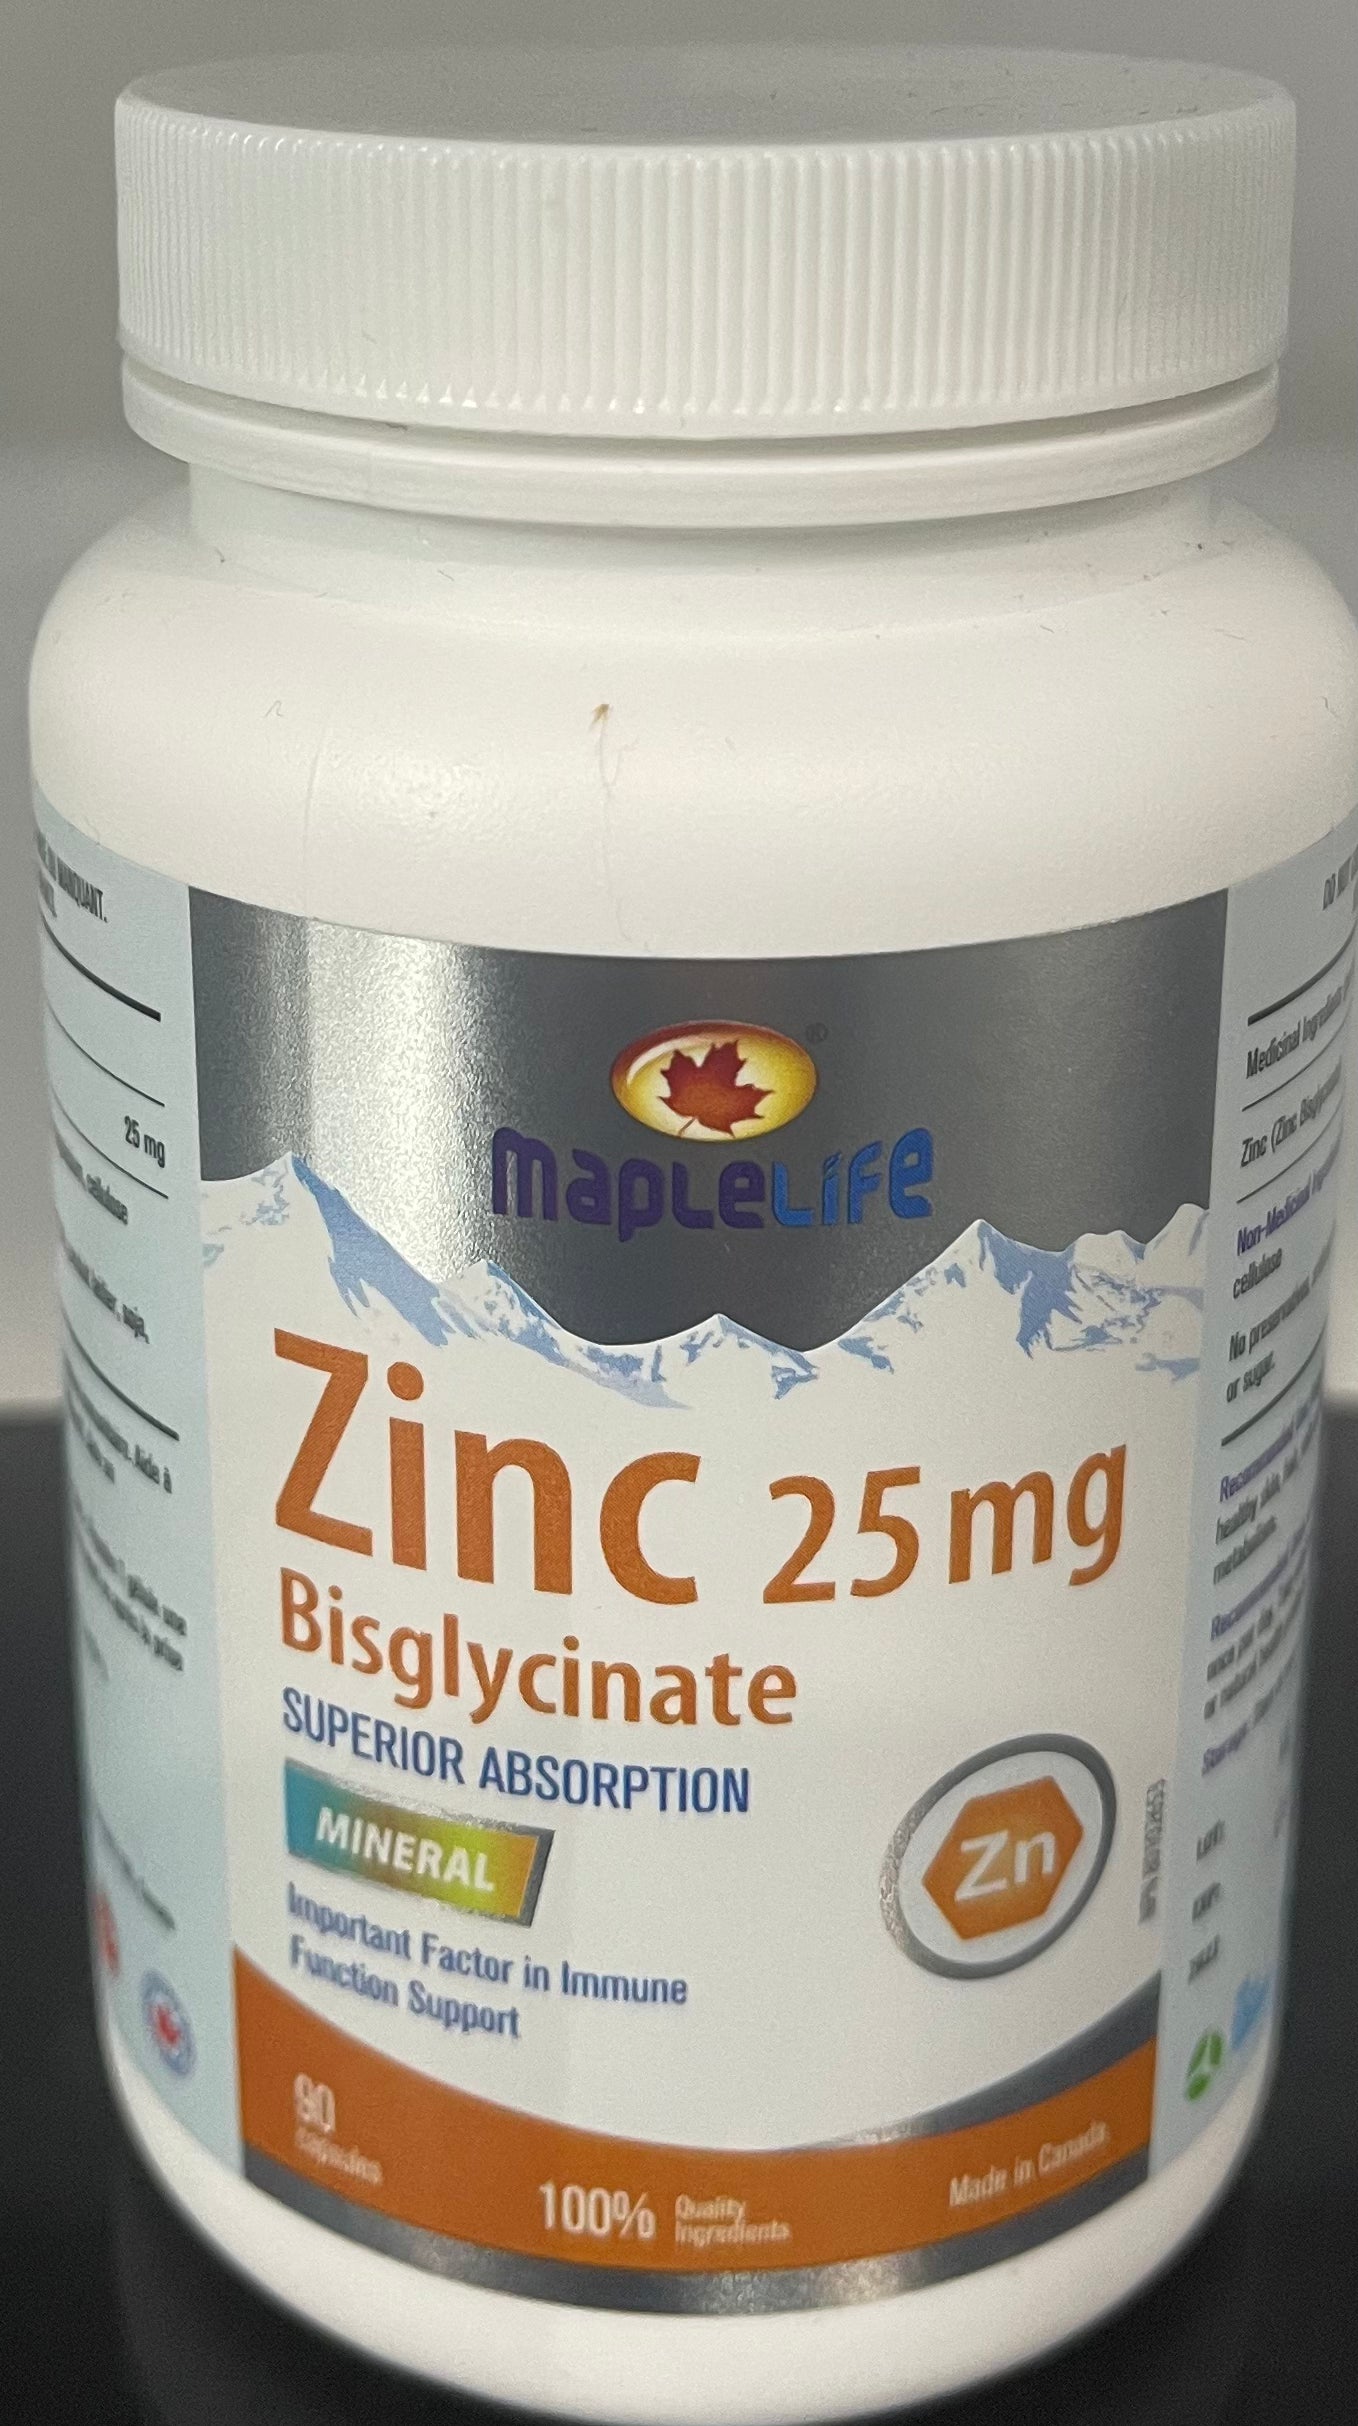 Maplelife Zinc Bisglycinate (60 capsules)